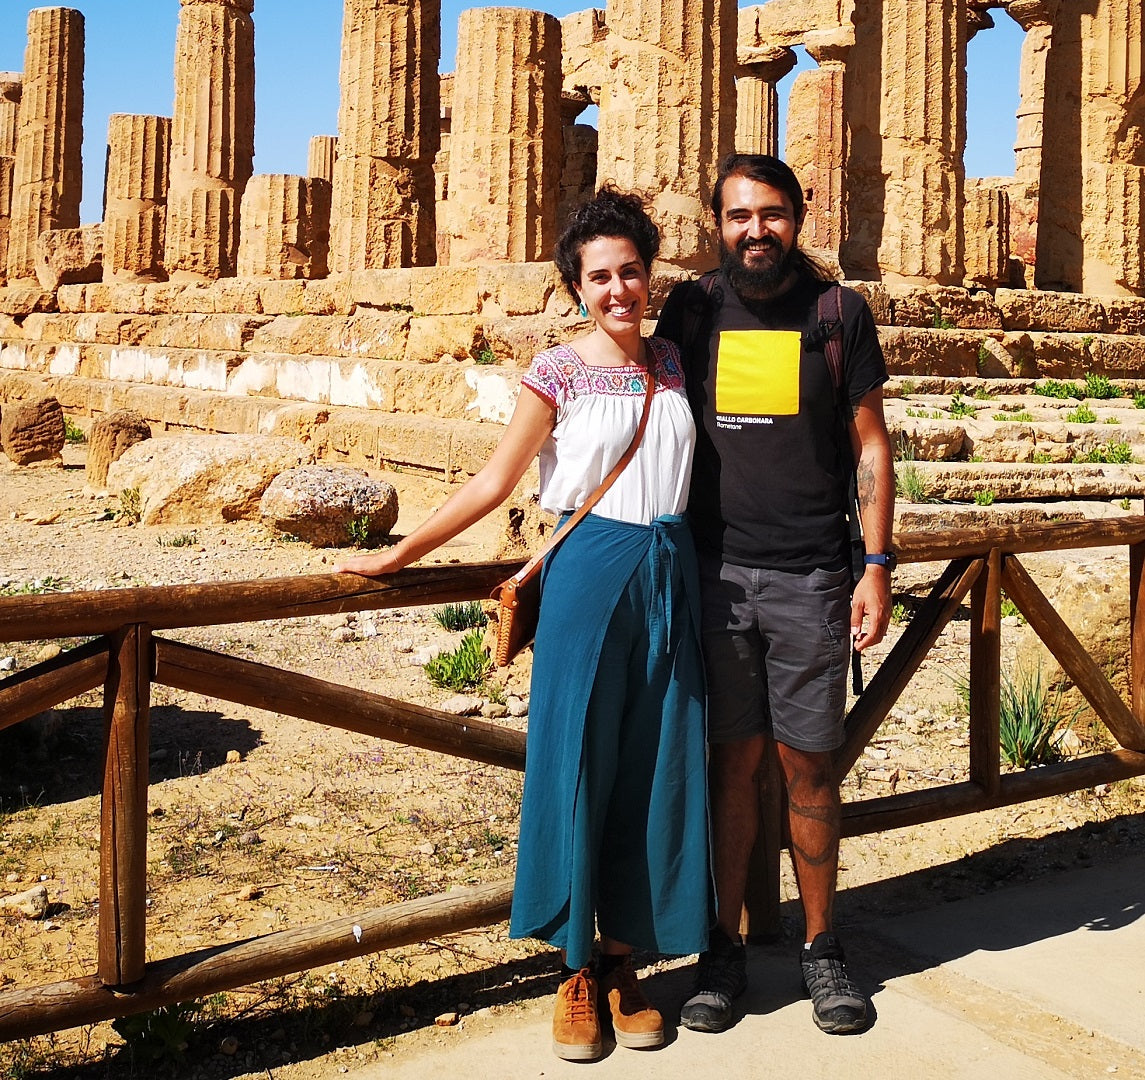 Carla ed Adrian alla Valle dei templi, Agrigento